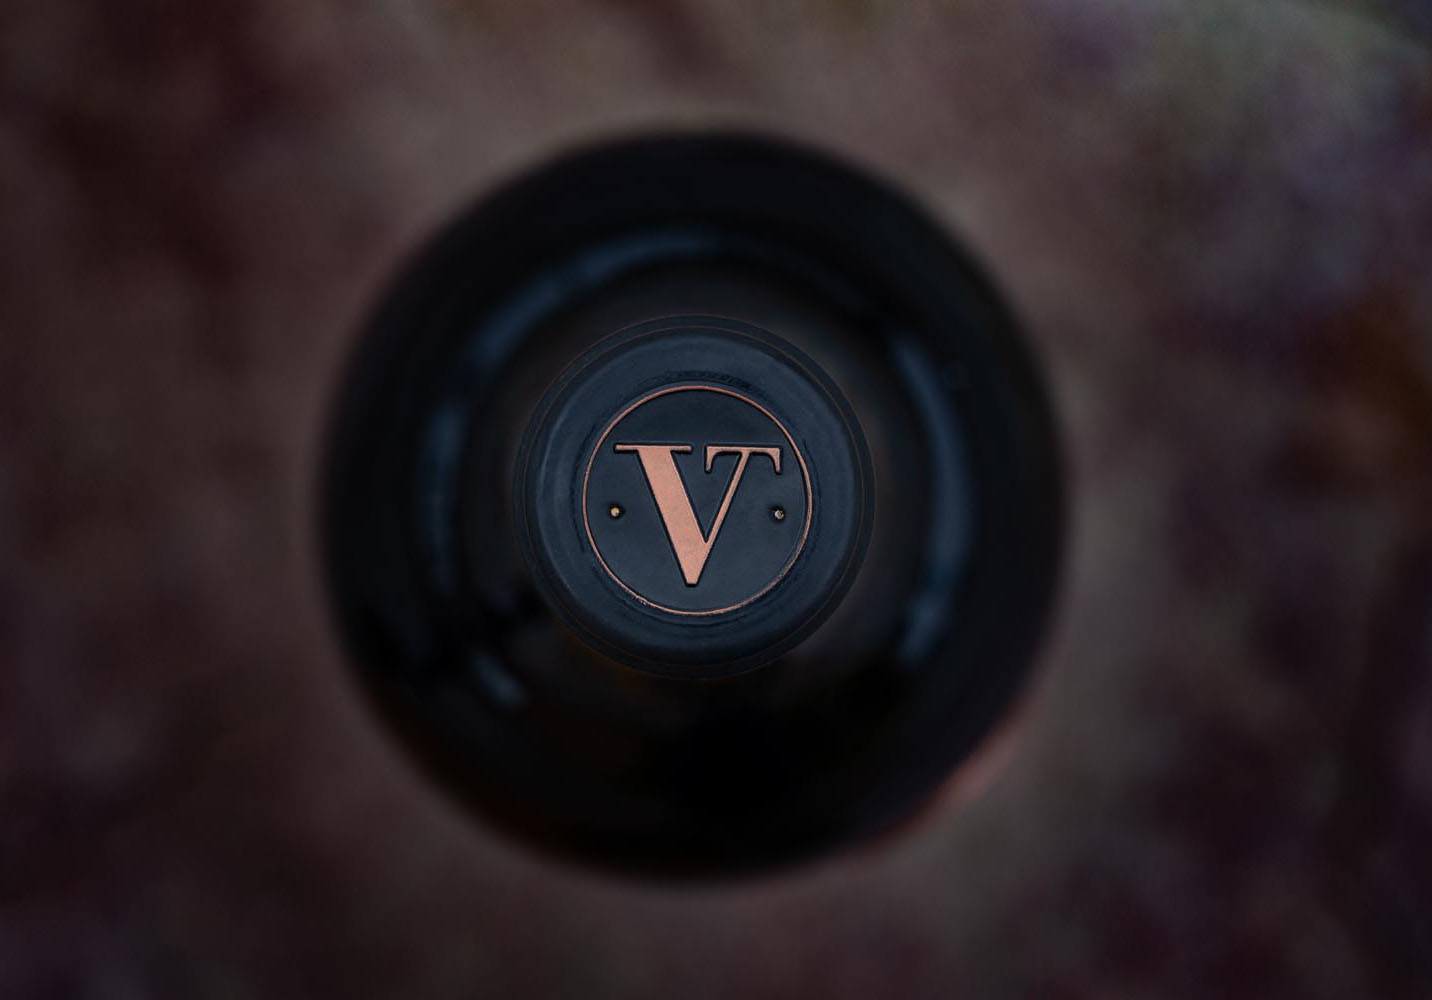 Botella de vino tinto Valtravieso vista desde arriba